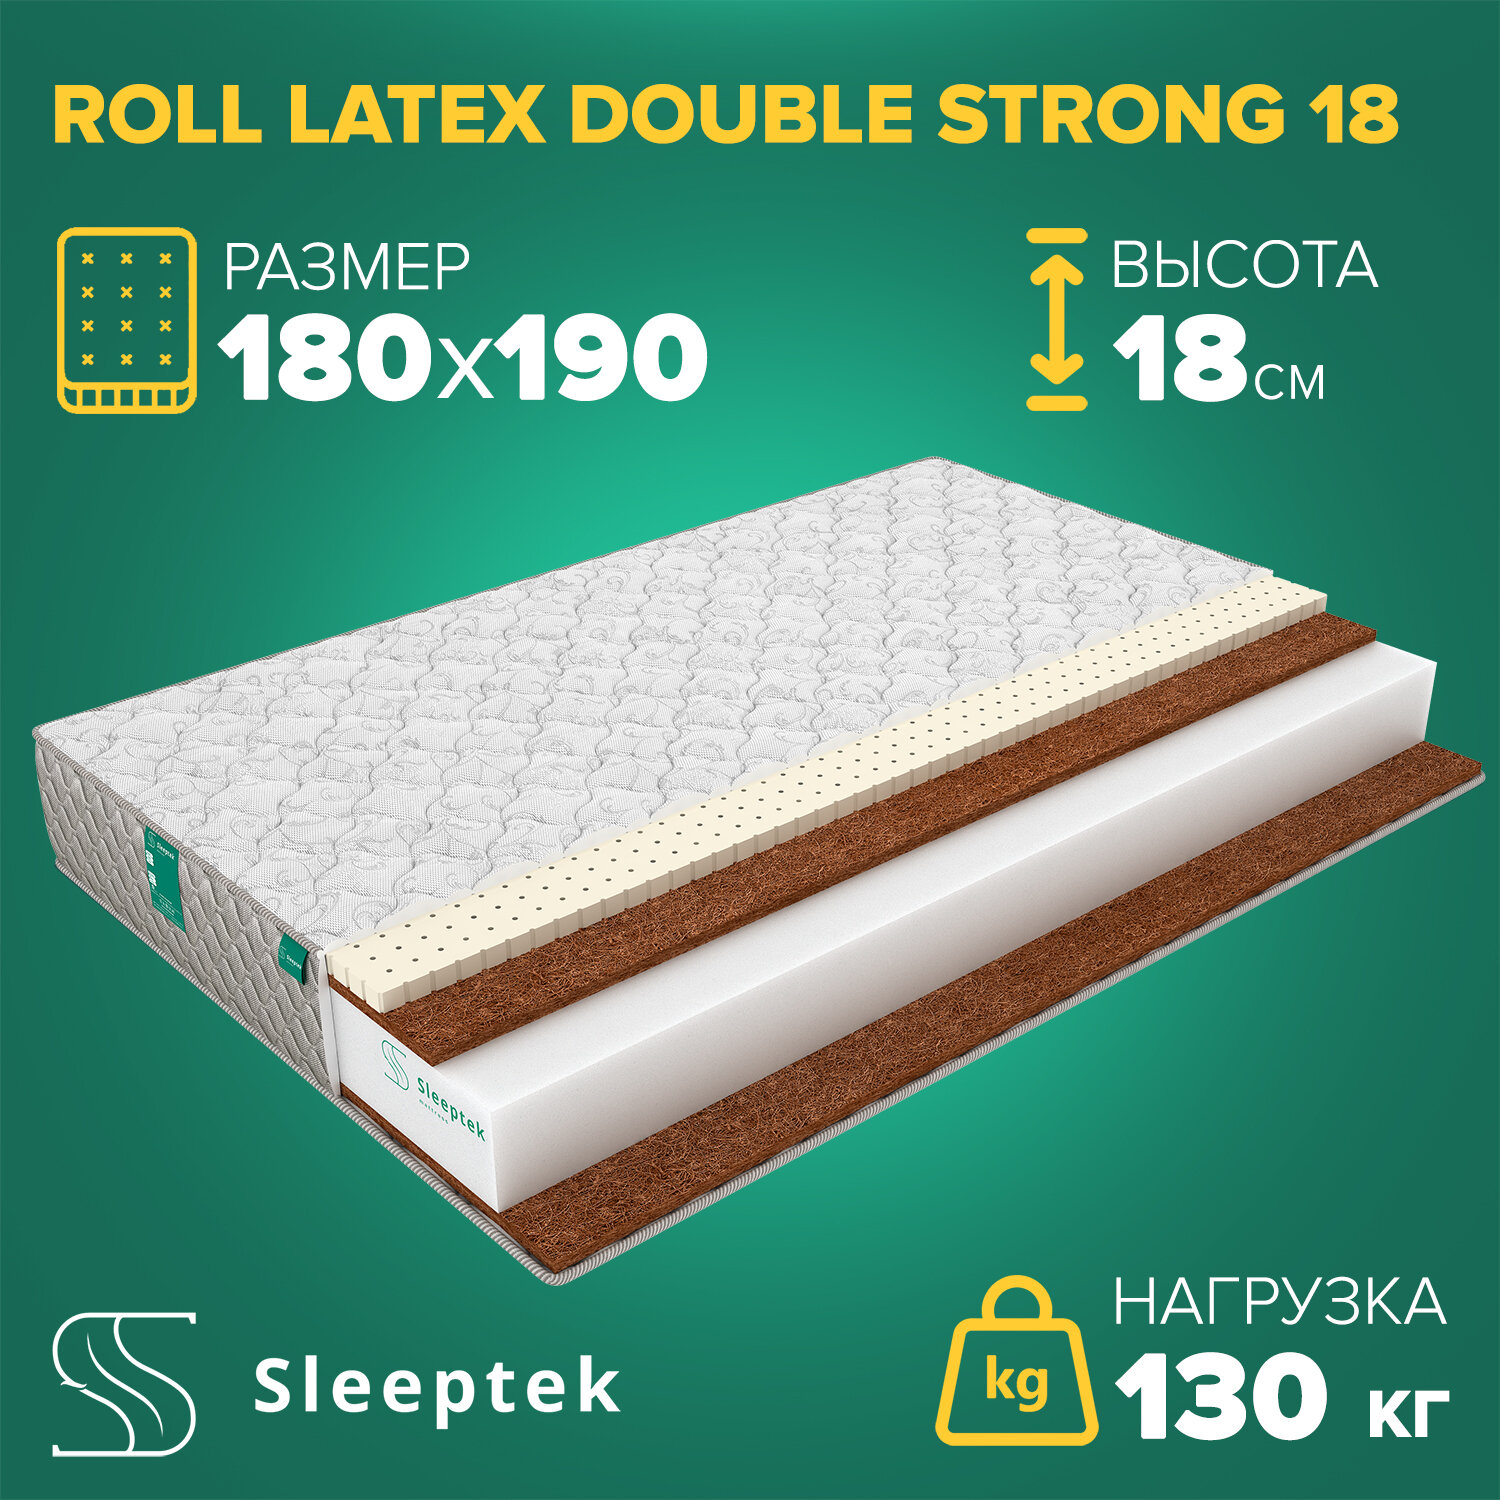 Матрас Sleeptek Roll Latex DoubleStrong 18 180х190